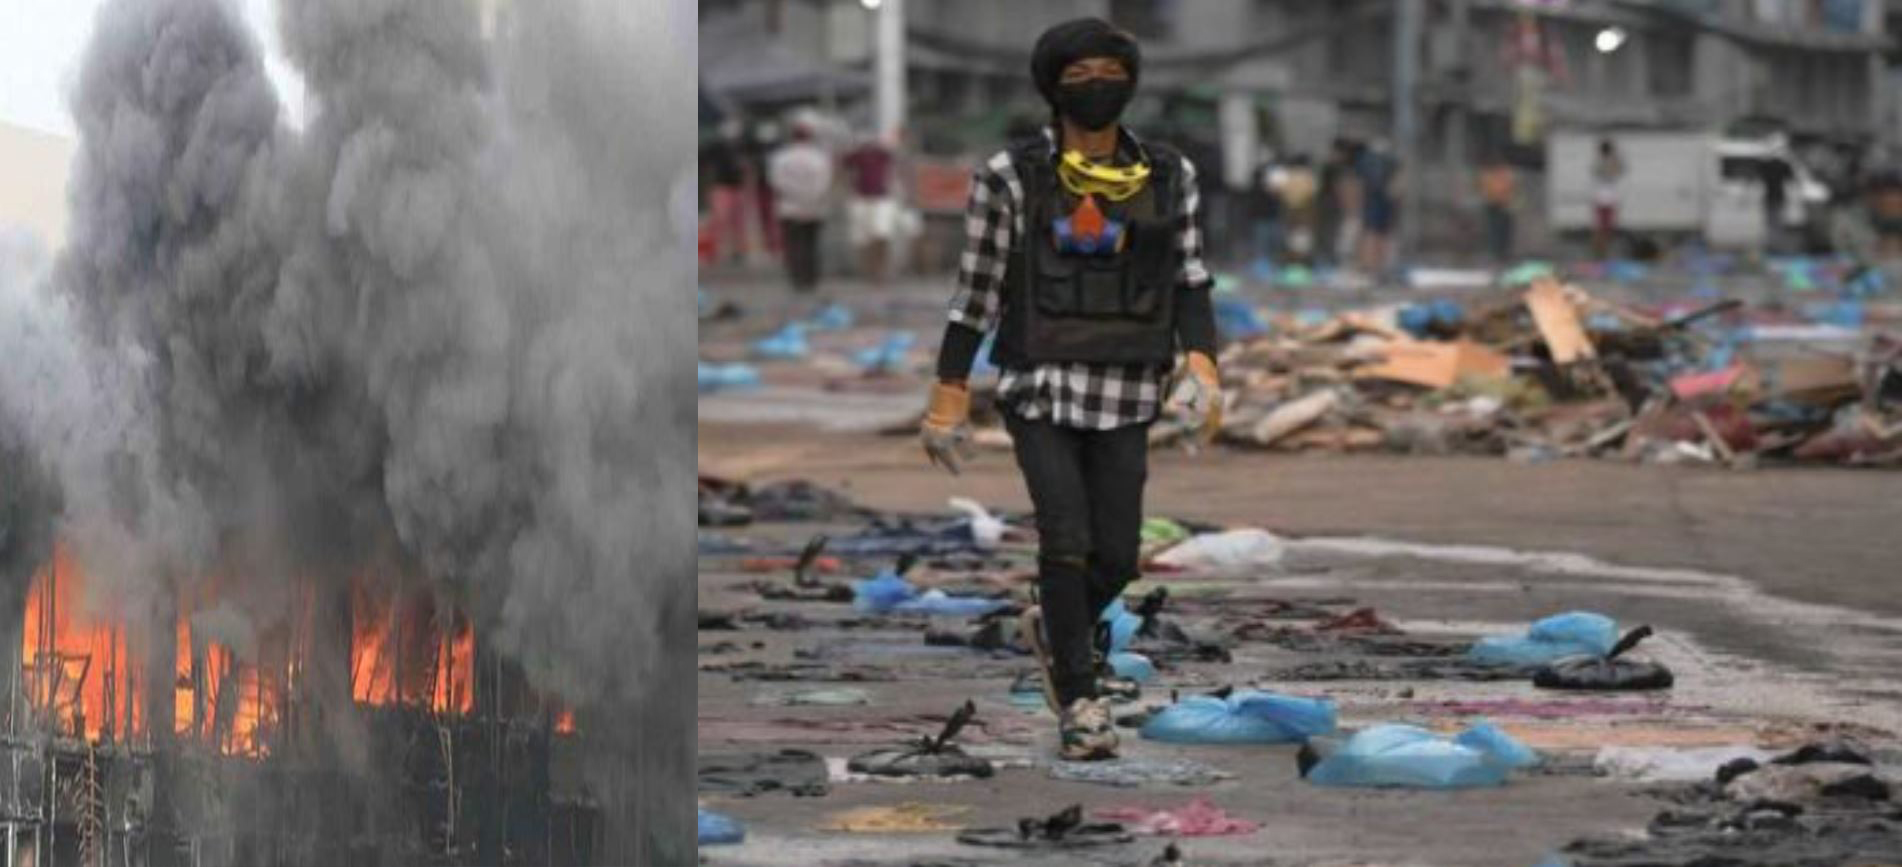 यंगून म्यांमार में प्रदर्शनकारियों ने लगाईं चाइनीज़ फैक्ट्री में आग ,सेना ने खुलेआम  बरसाईं गोलियां 51 लोगो की मौत 